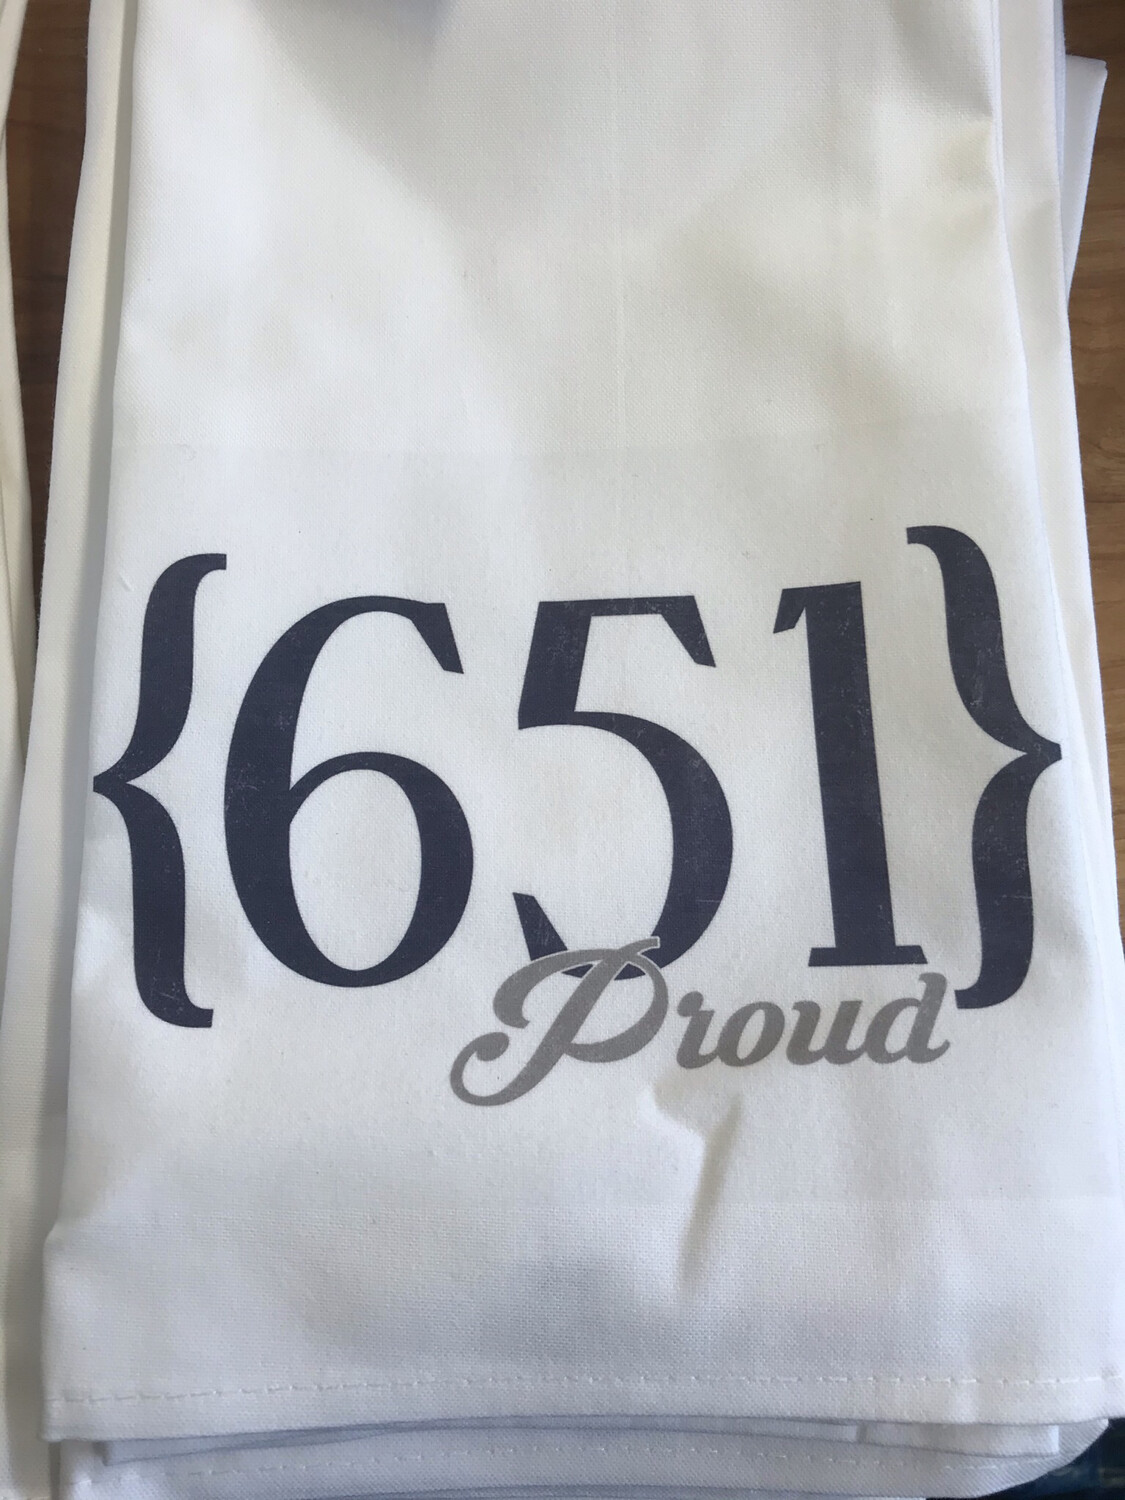 651 Proud Towel